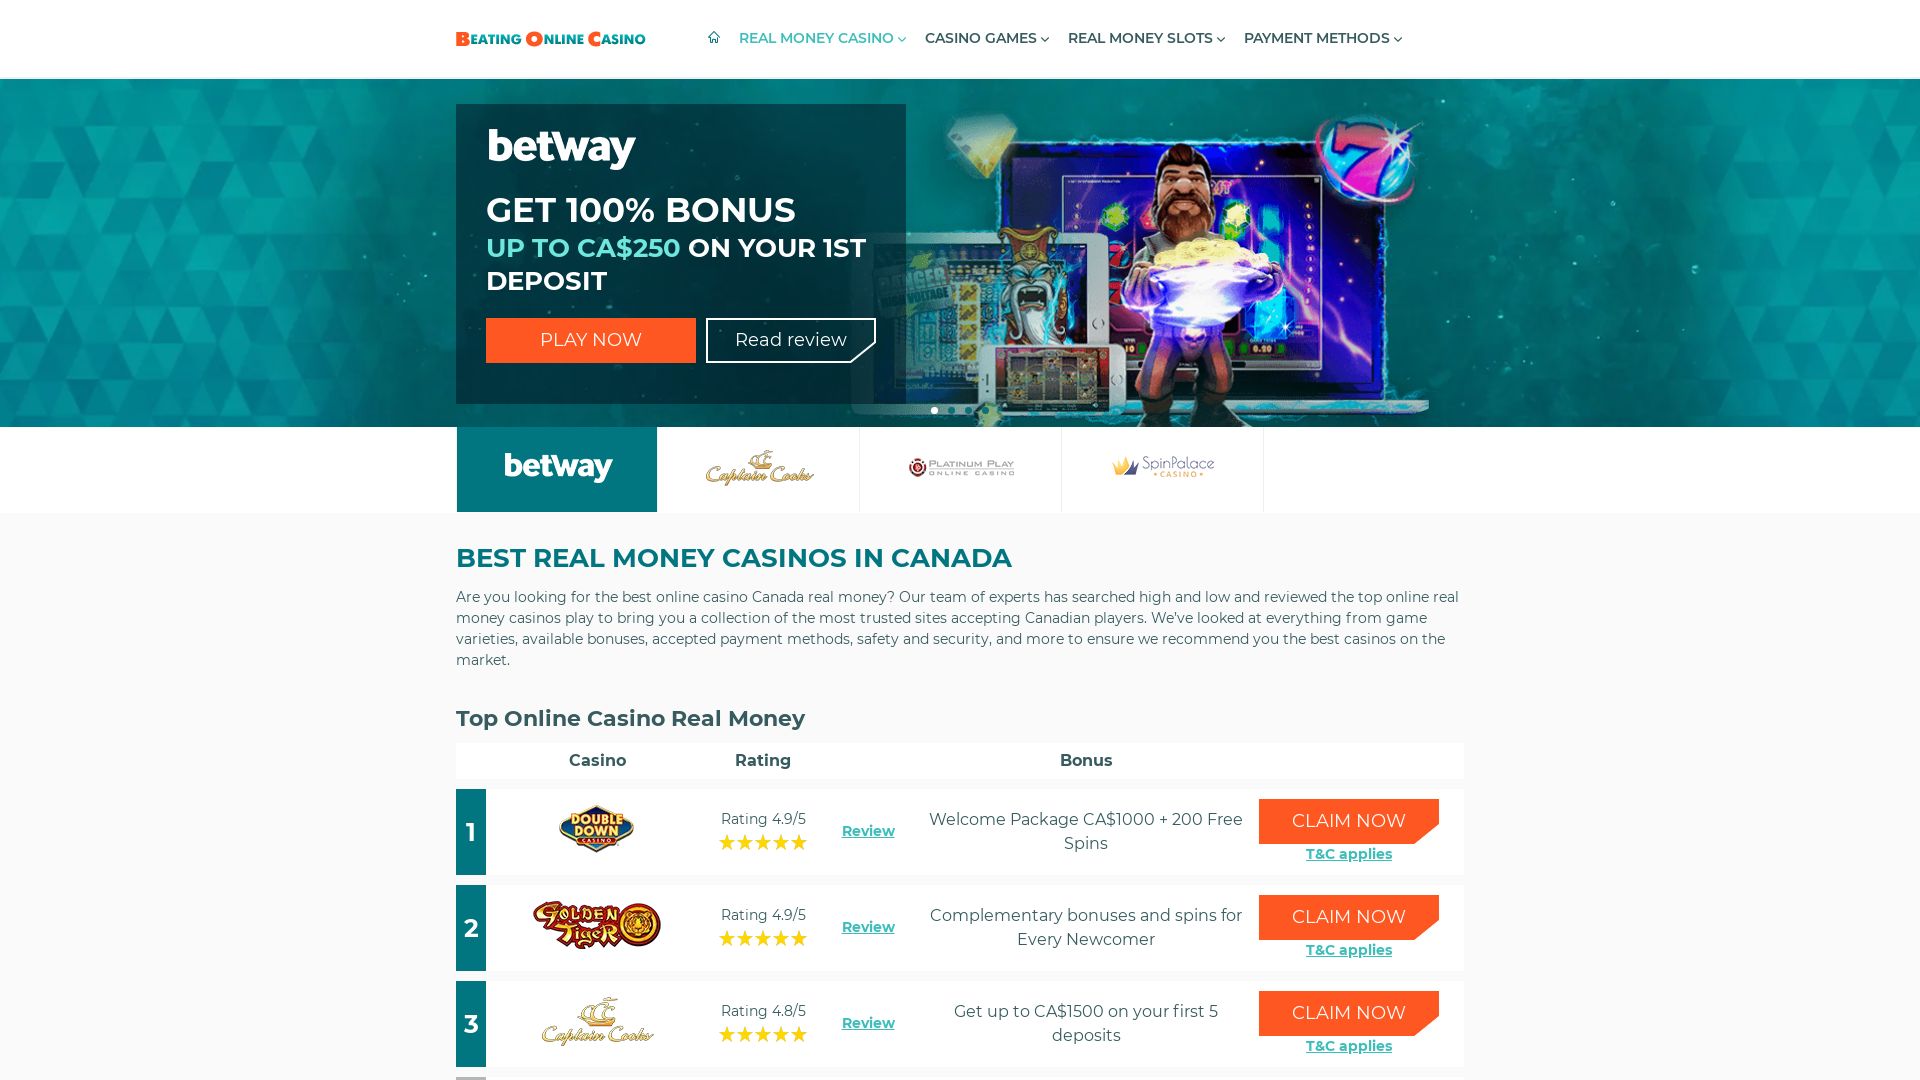 Website status real-money-casino.ca is   ONLINE